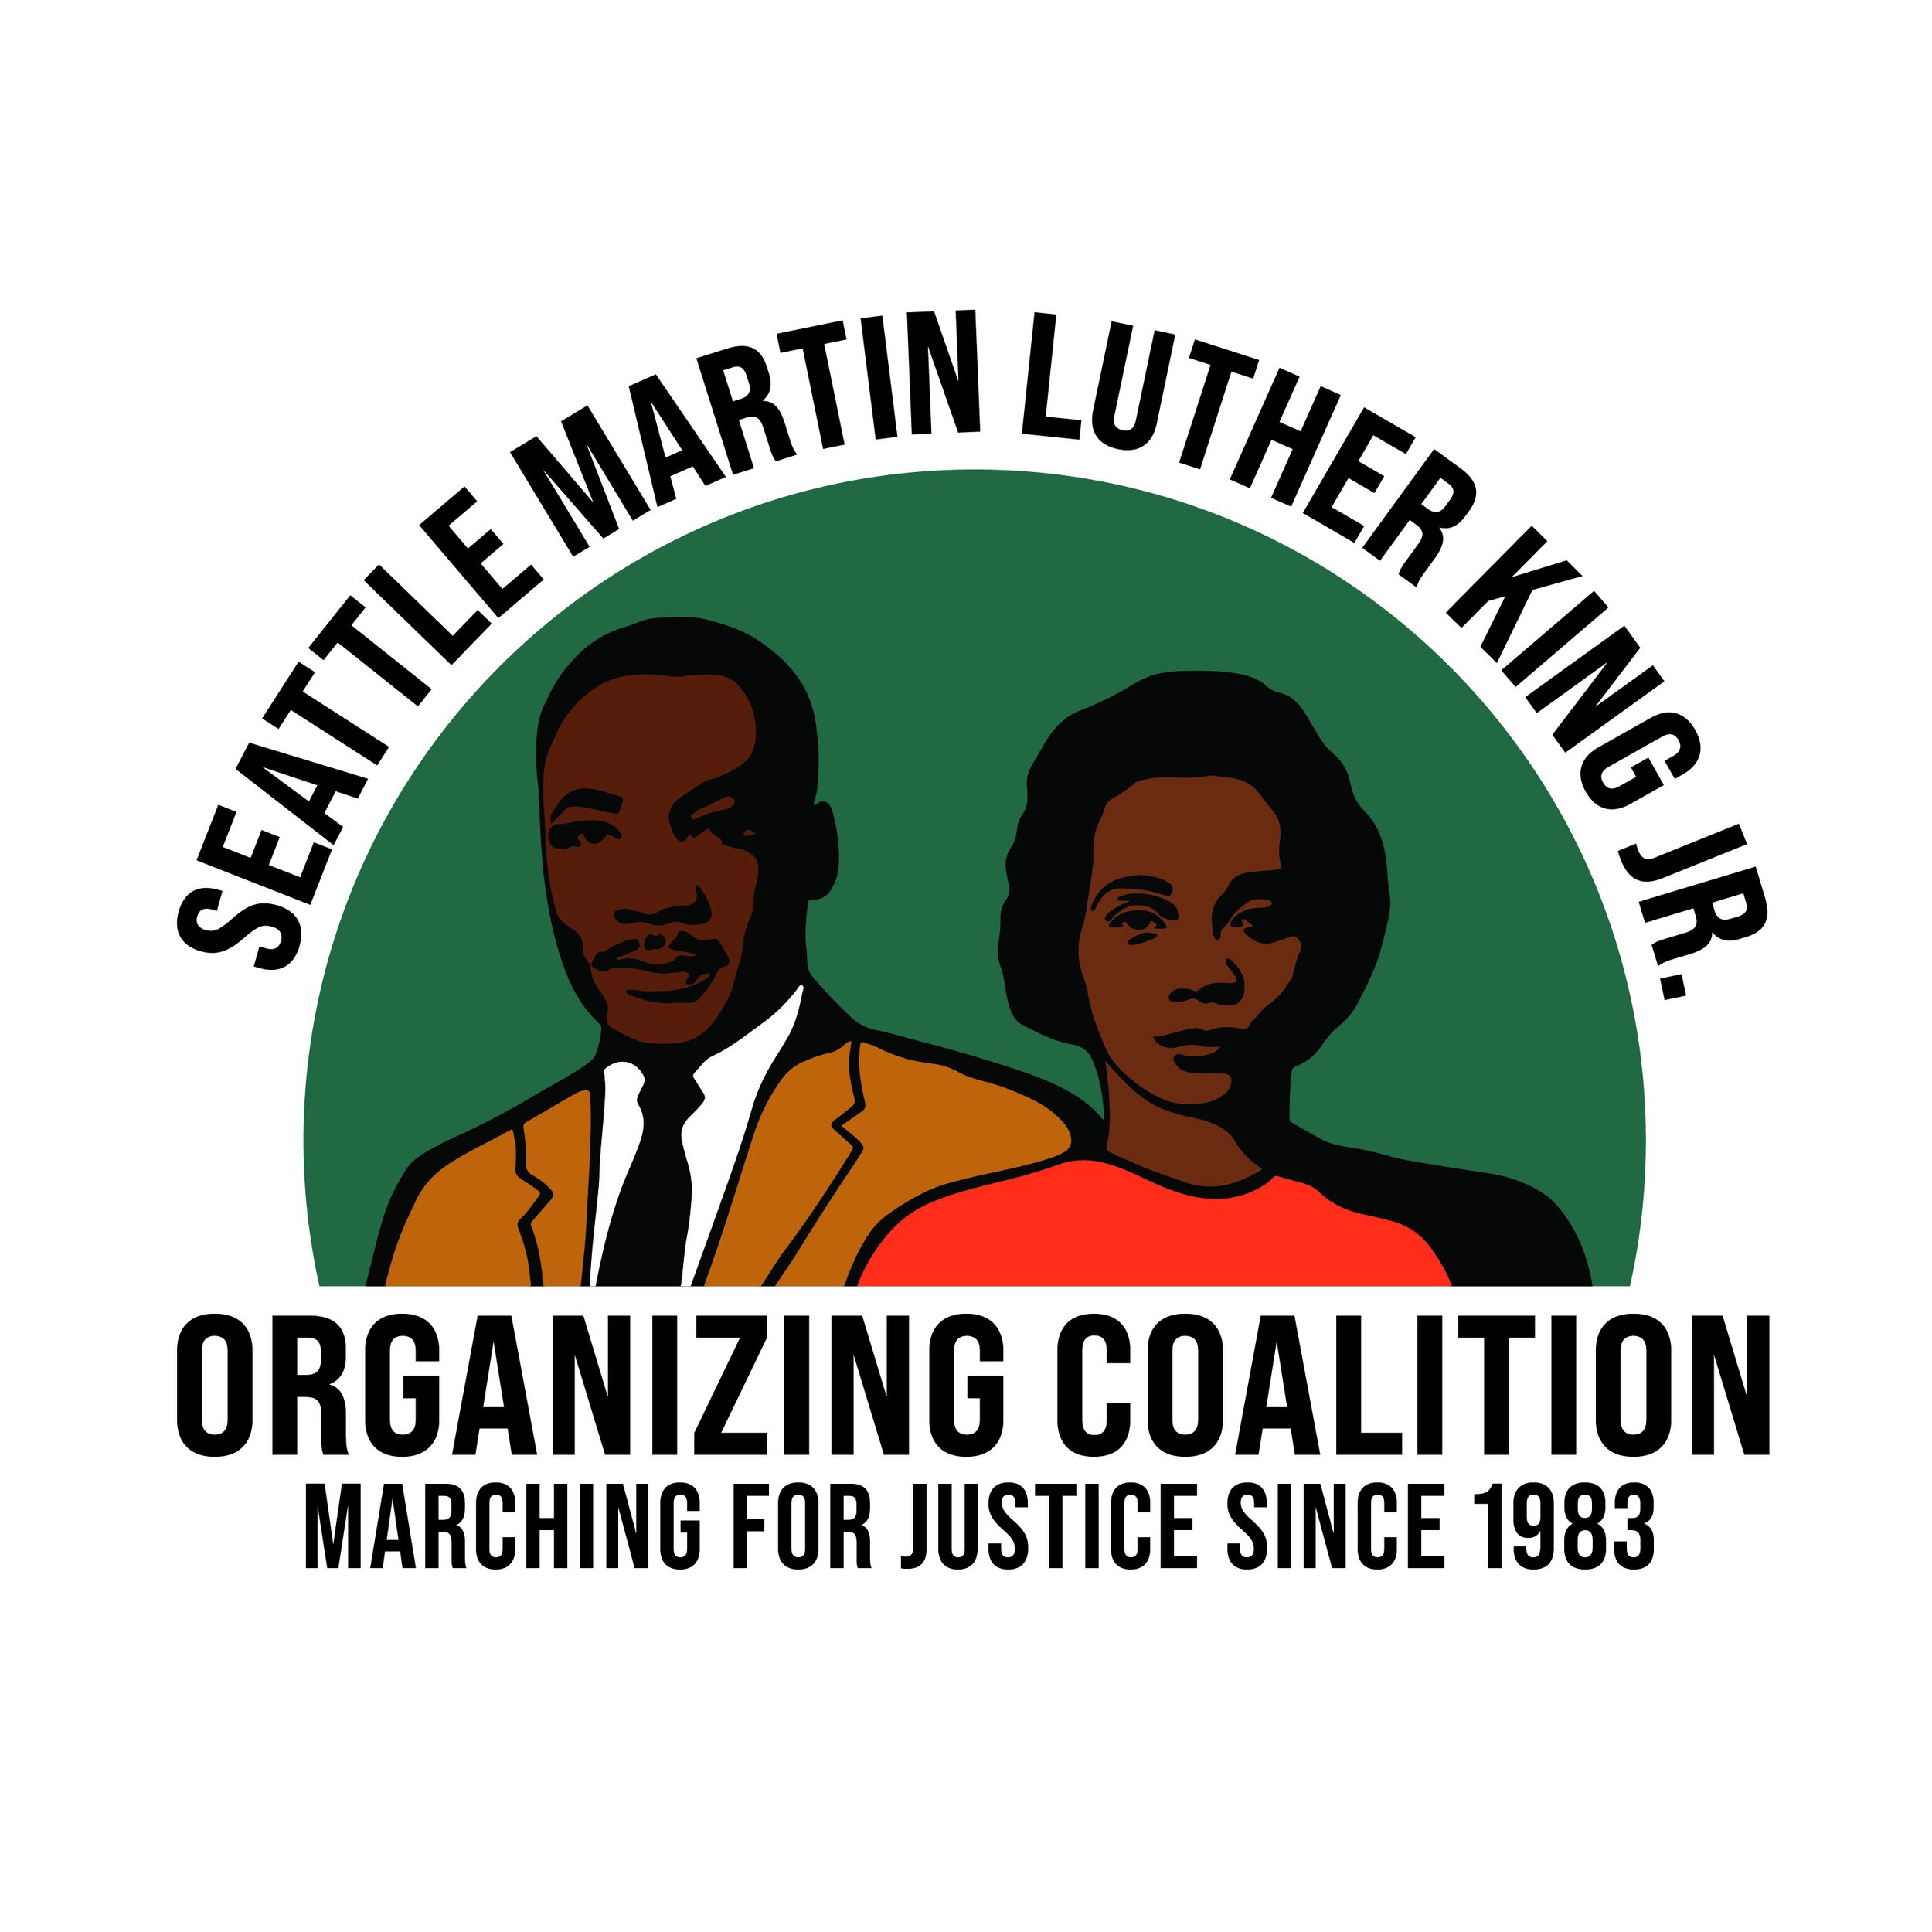 Sea MLK Jr Coalition